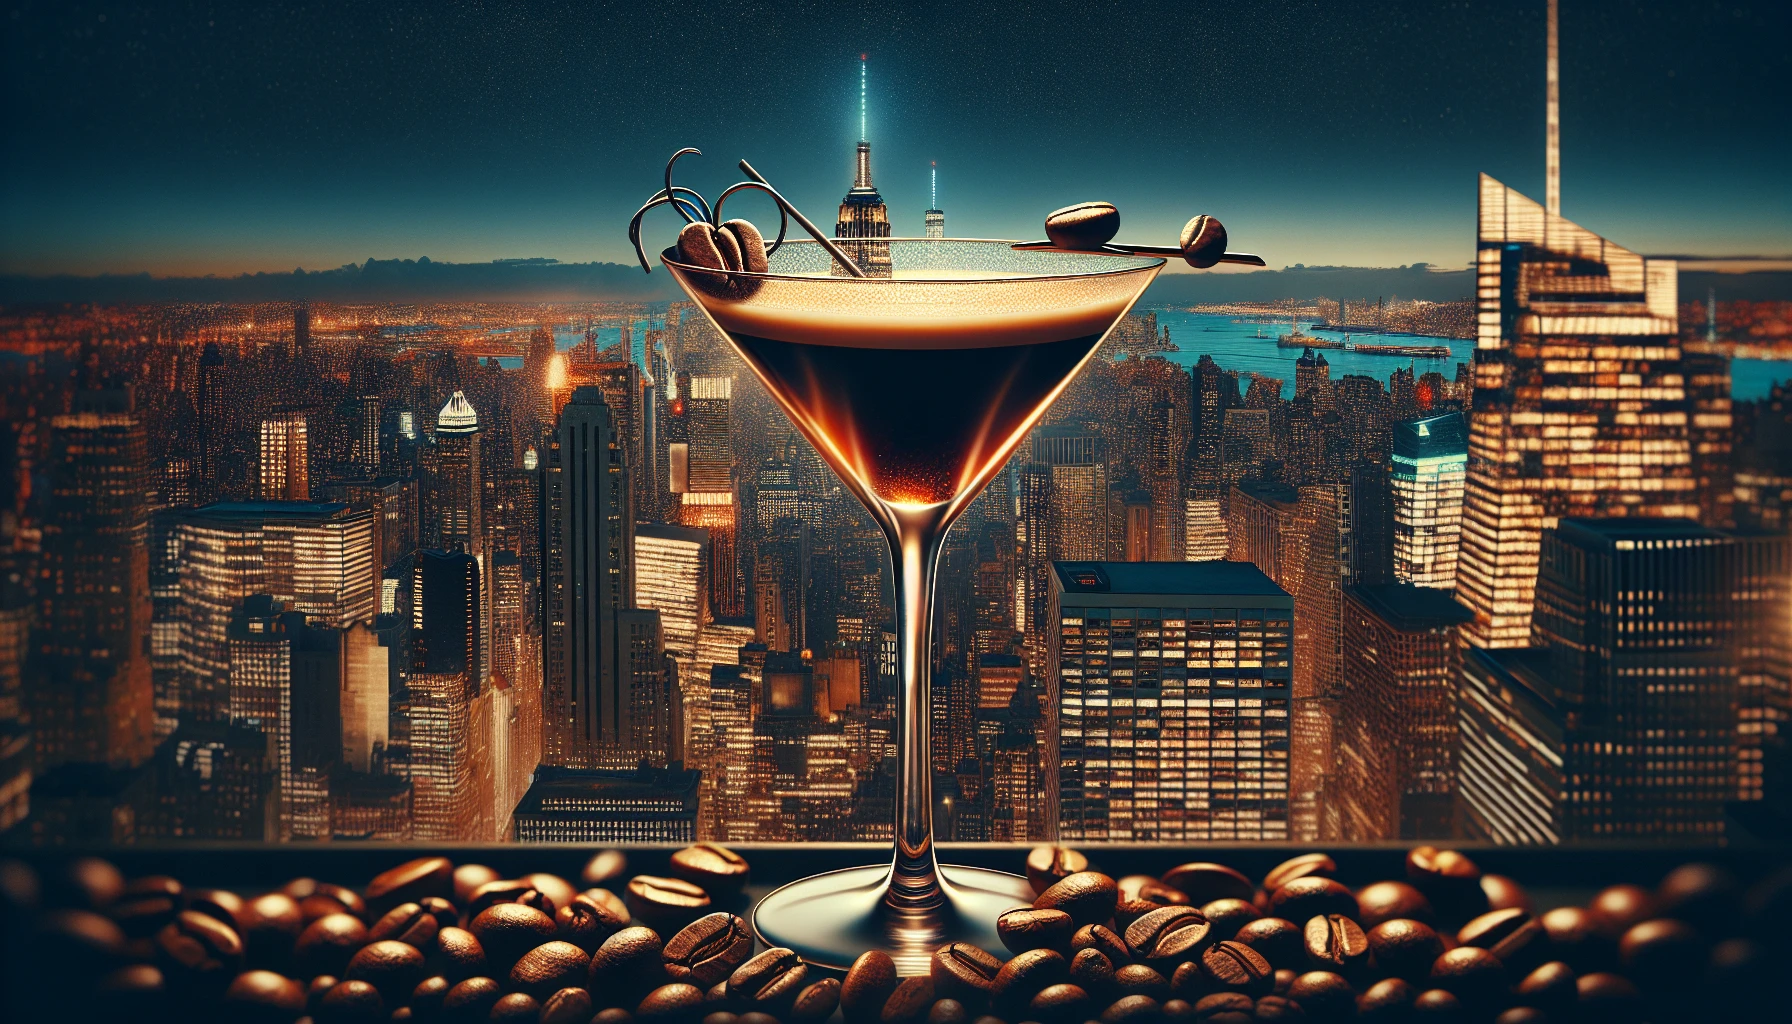 The best Best espresso martini recipe in New York City, guv’nor!